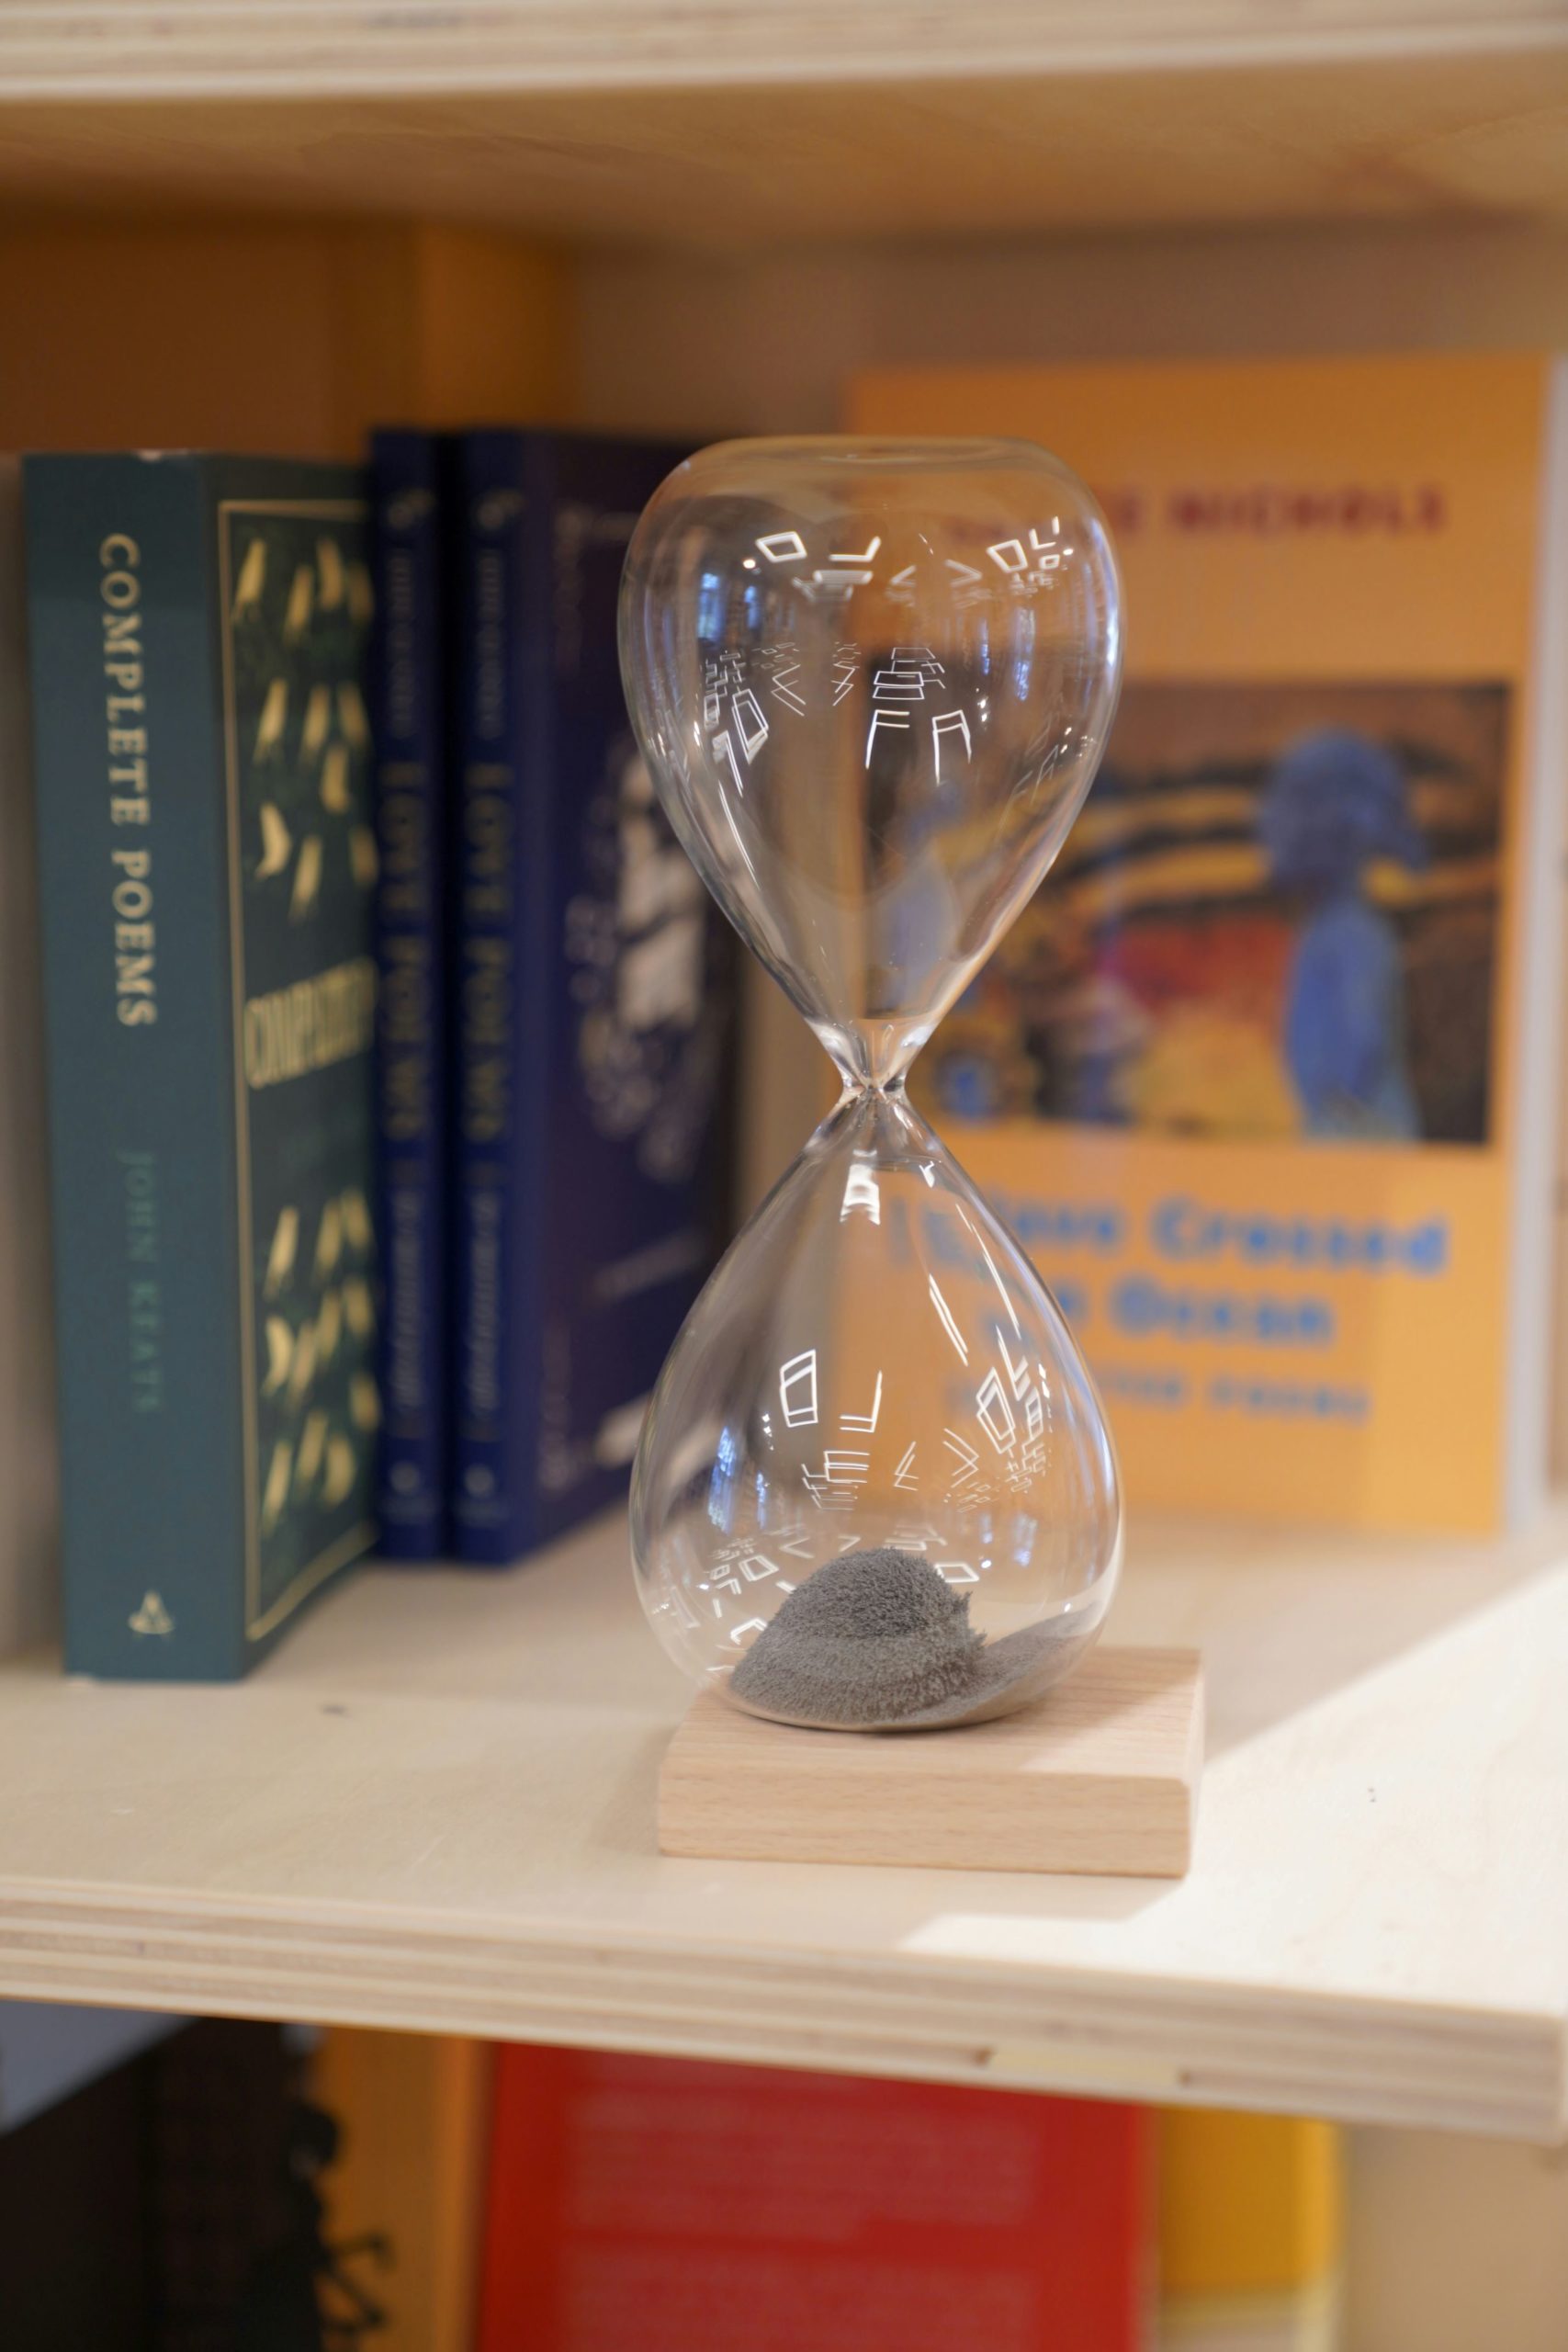 hourglass on a book shelf